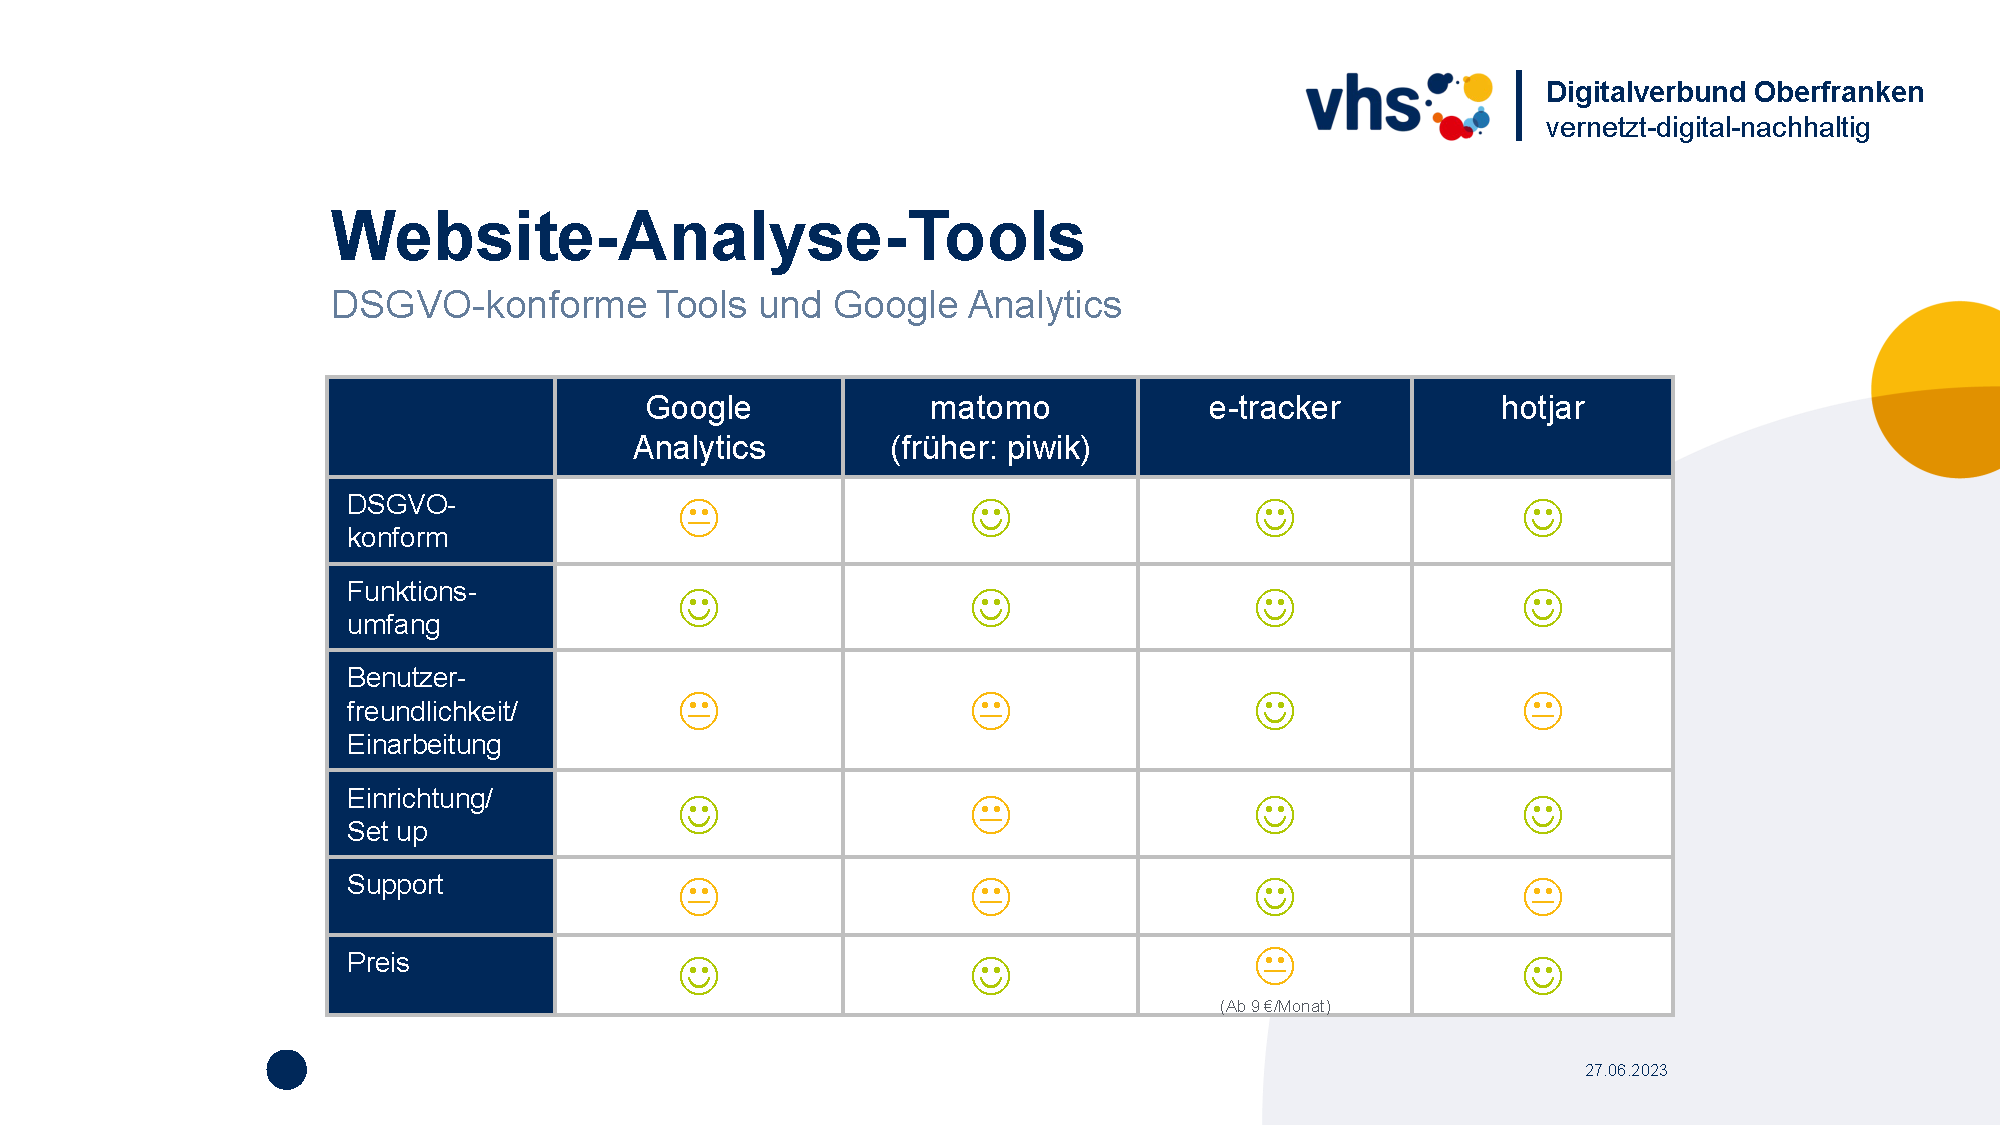 Deckblatt Marketing-Digithek: Website Analyse-Tools im Vergleich